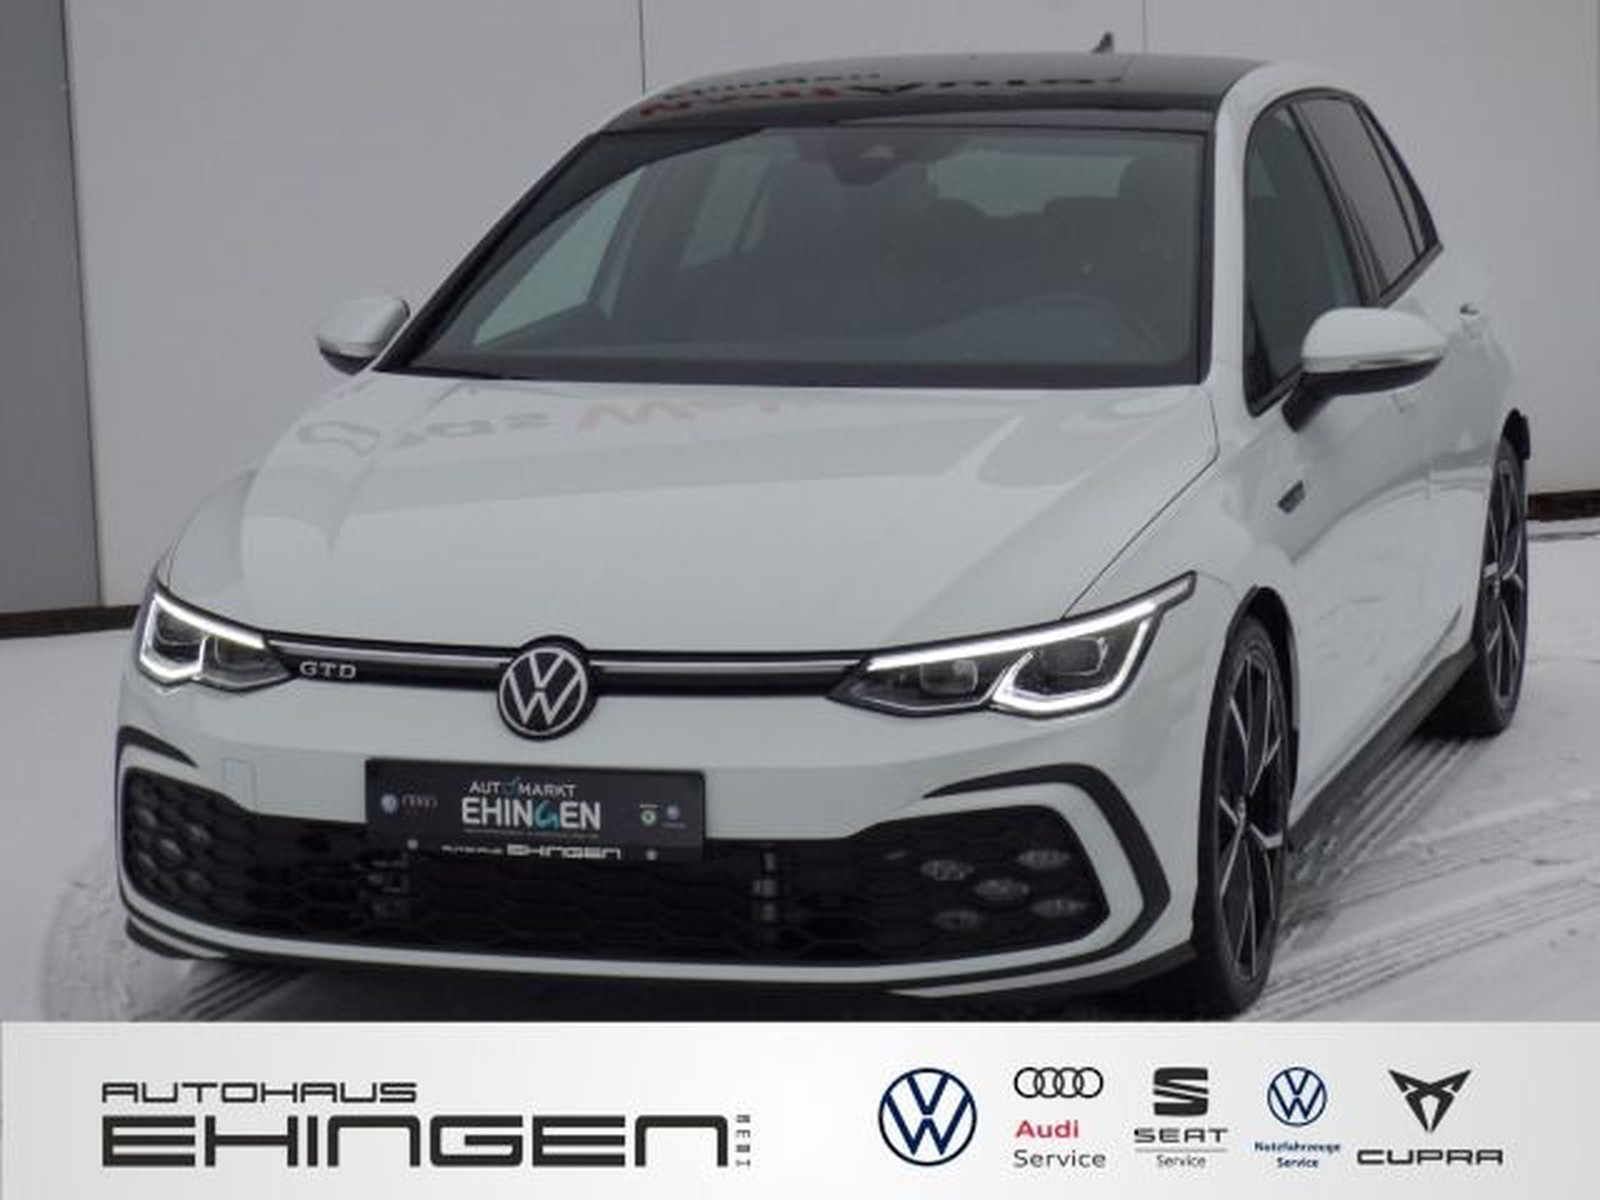 Volkswagen Golf VIII 8 GTD 2.0 TDI DSG ACC LED Navi Kamera gebraucht kaufen  in Ehingen Preis 33444 eur - Int.Nr.: 04628 VERKAUFT